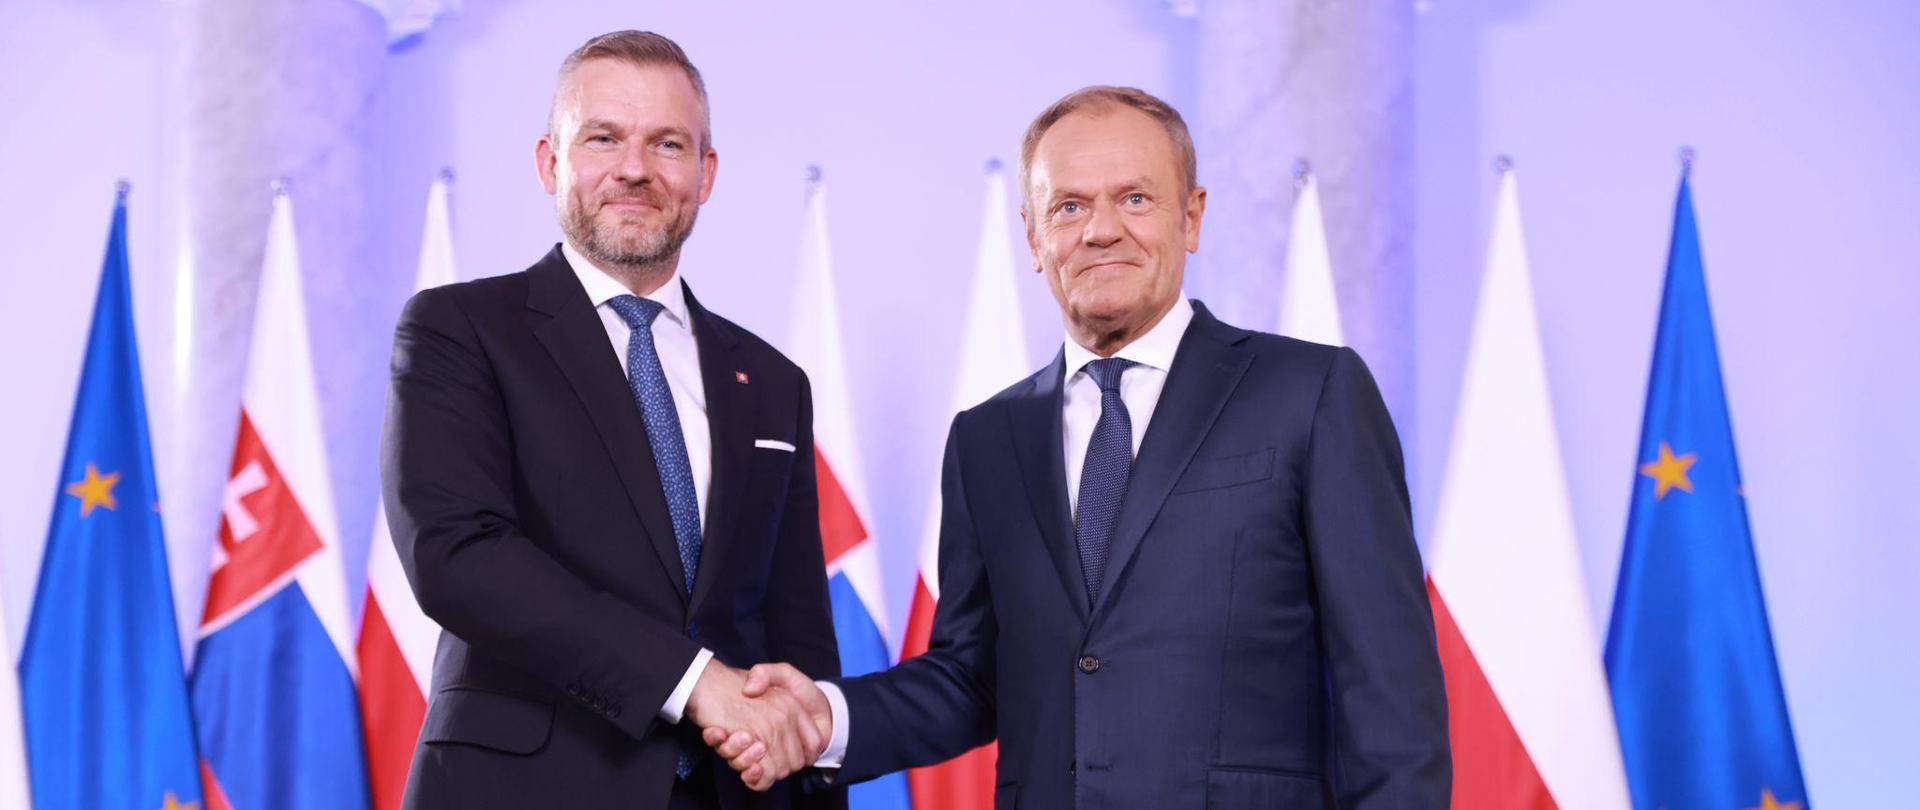 Spotkanie Premiera Donalda Tuska z Prezydentem Republiki Słowacji Peterem Pellengrini.